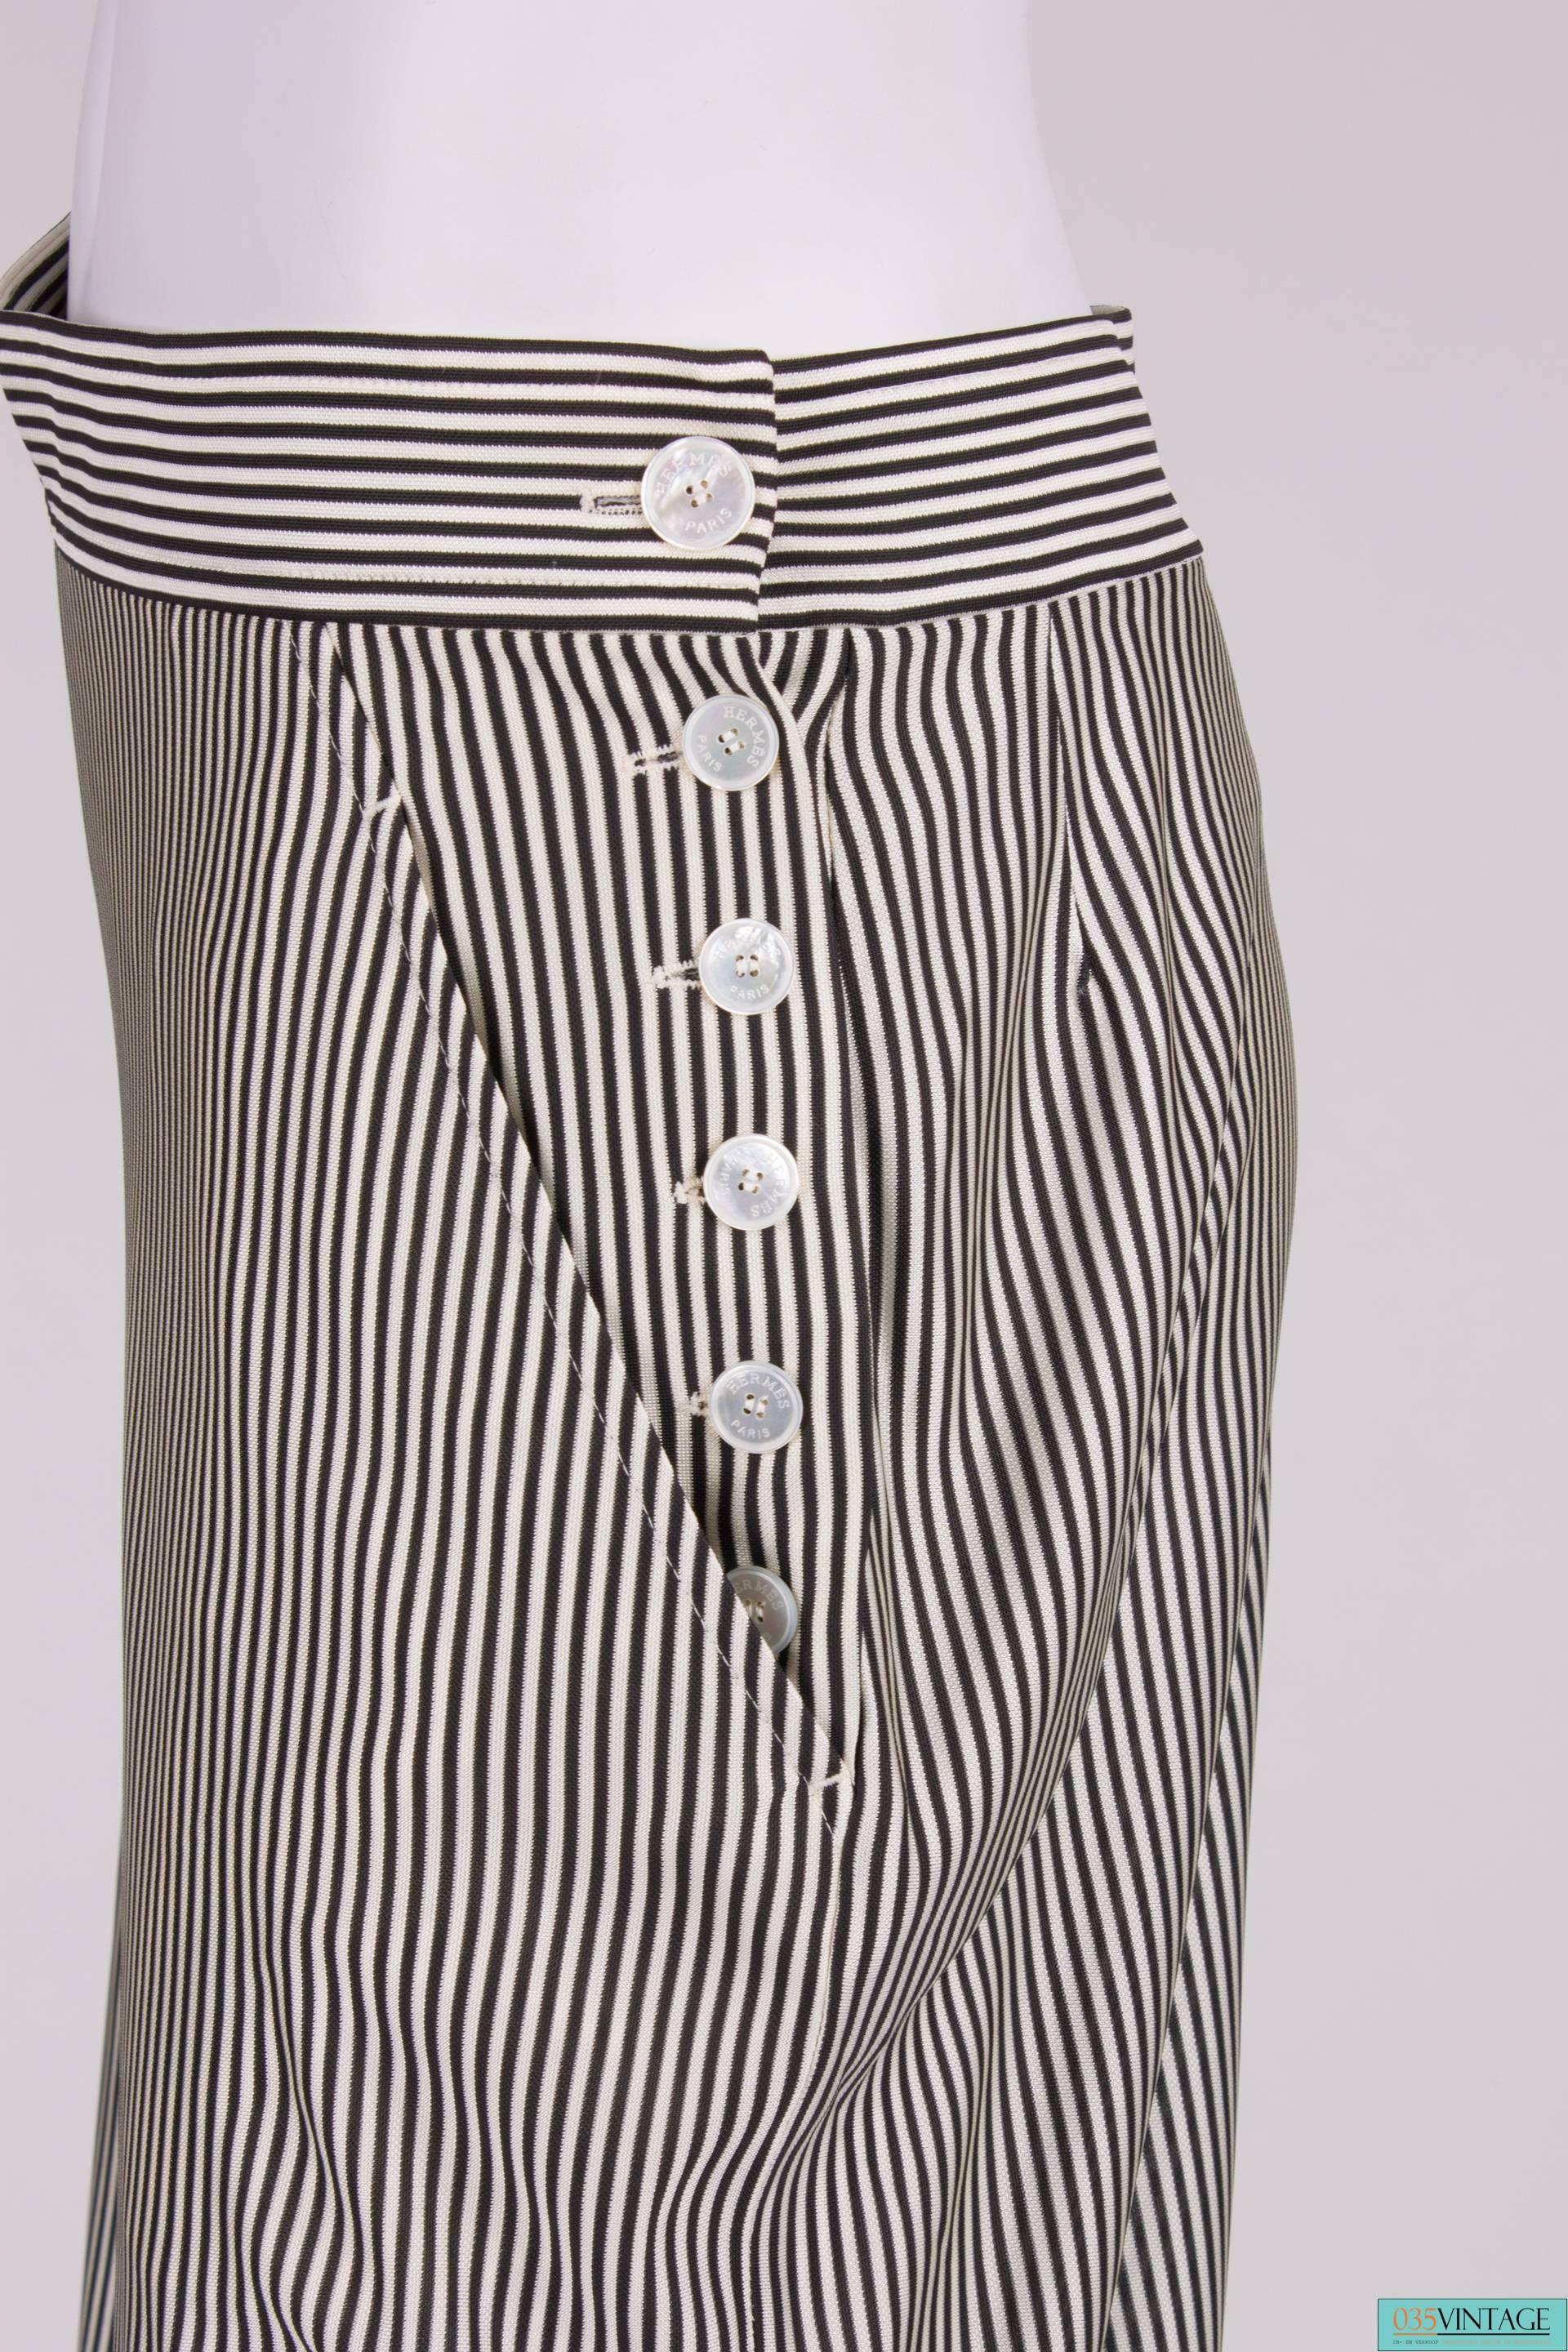 Women's or Men's Hermes 2-pcs Suit Top & Pants - black/white 